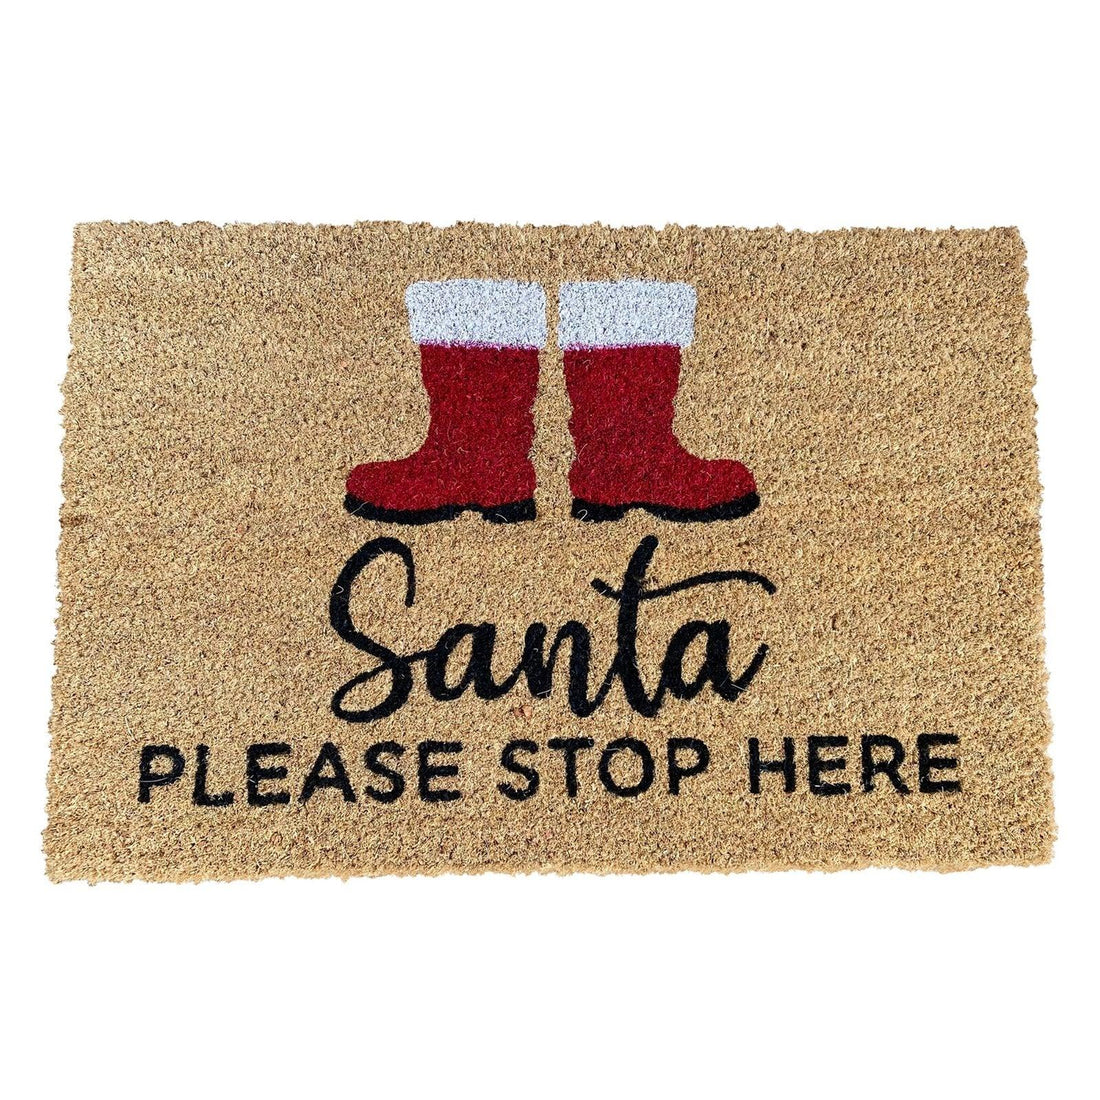 Santa Stop Here Doormat Boots - £25.99 - Christmas Doormats 